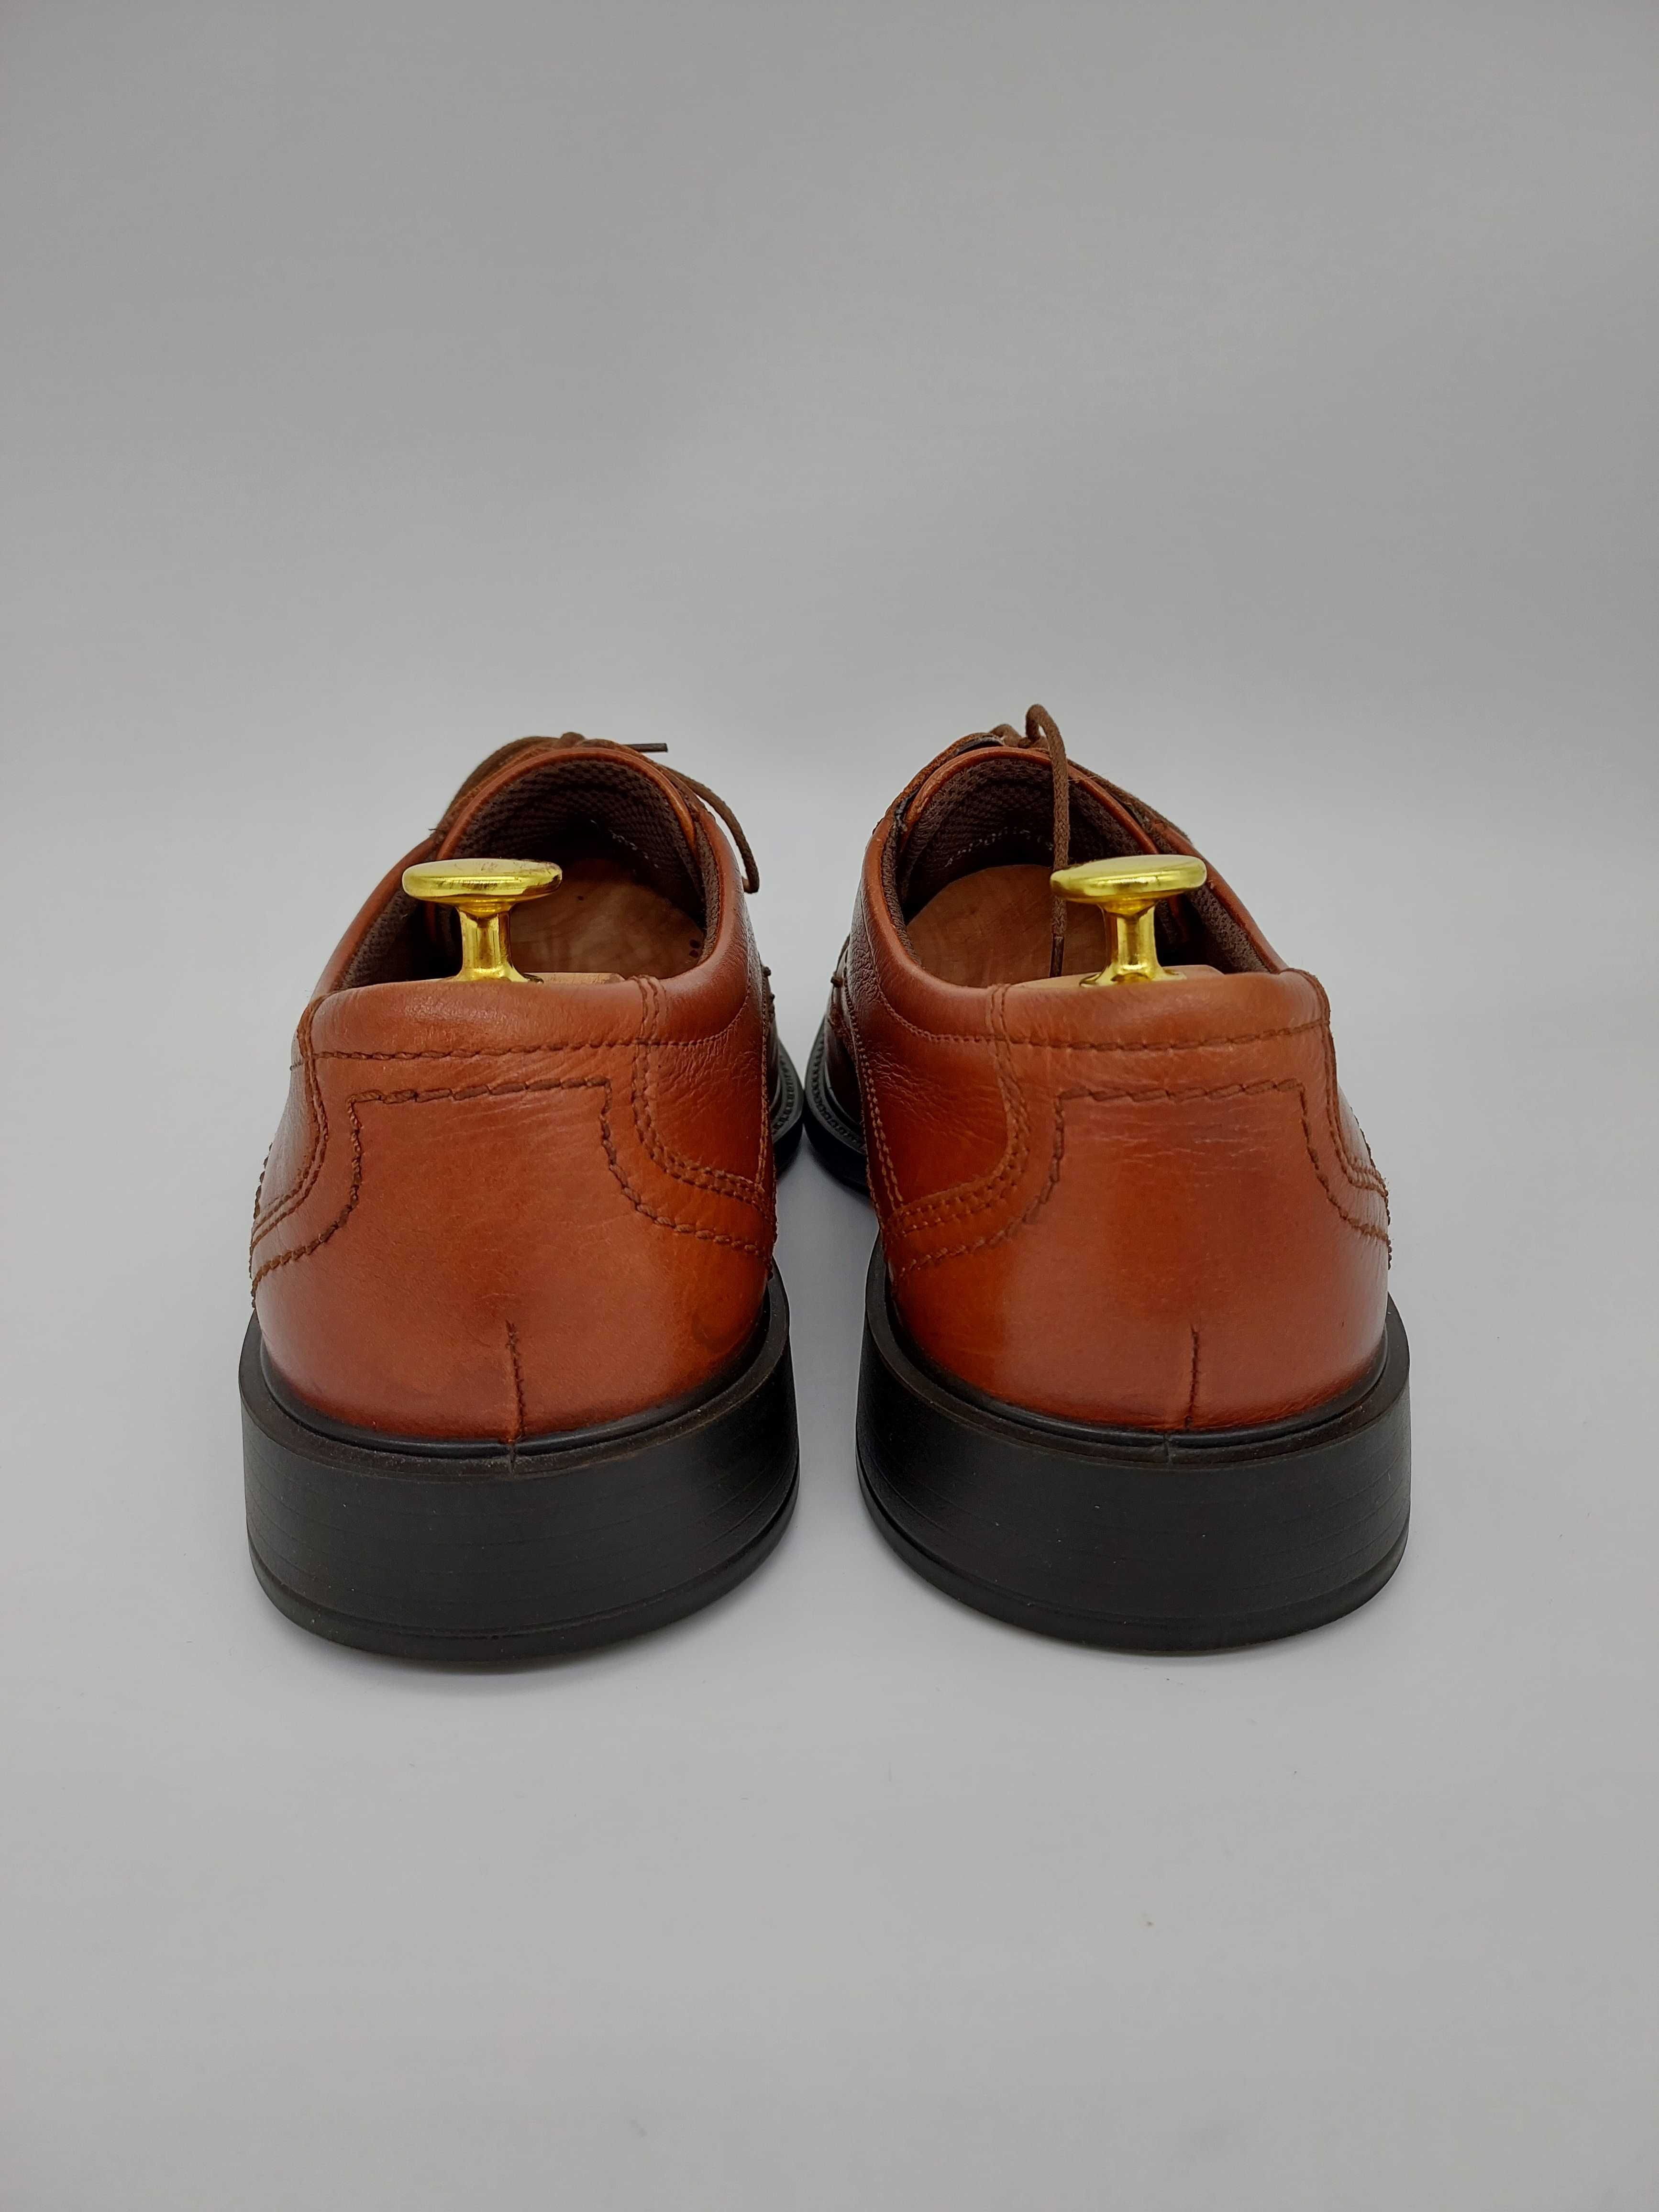 Męskie pantofle półbuty buty Ecco brązowe koniakowe 45